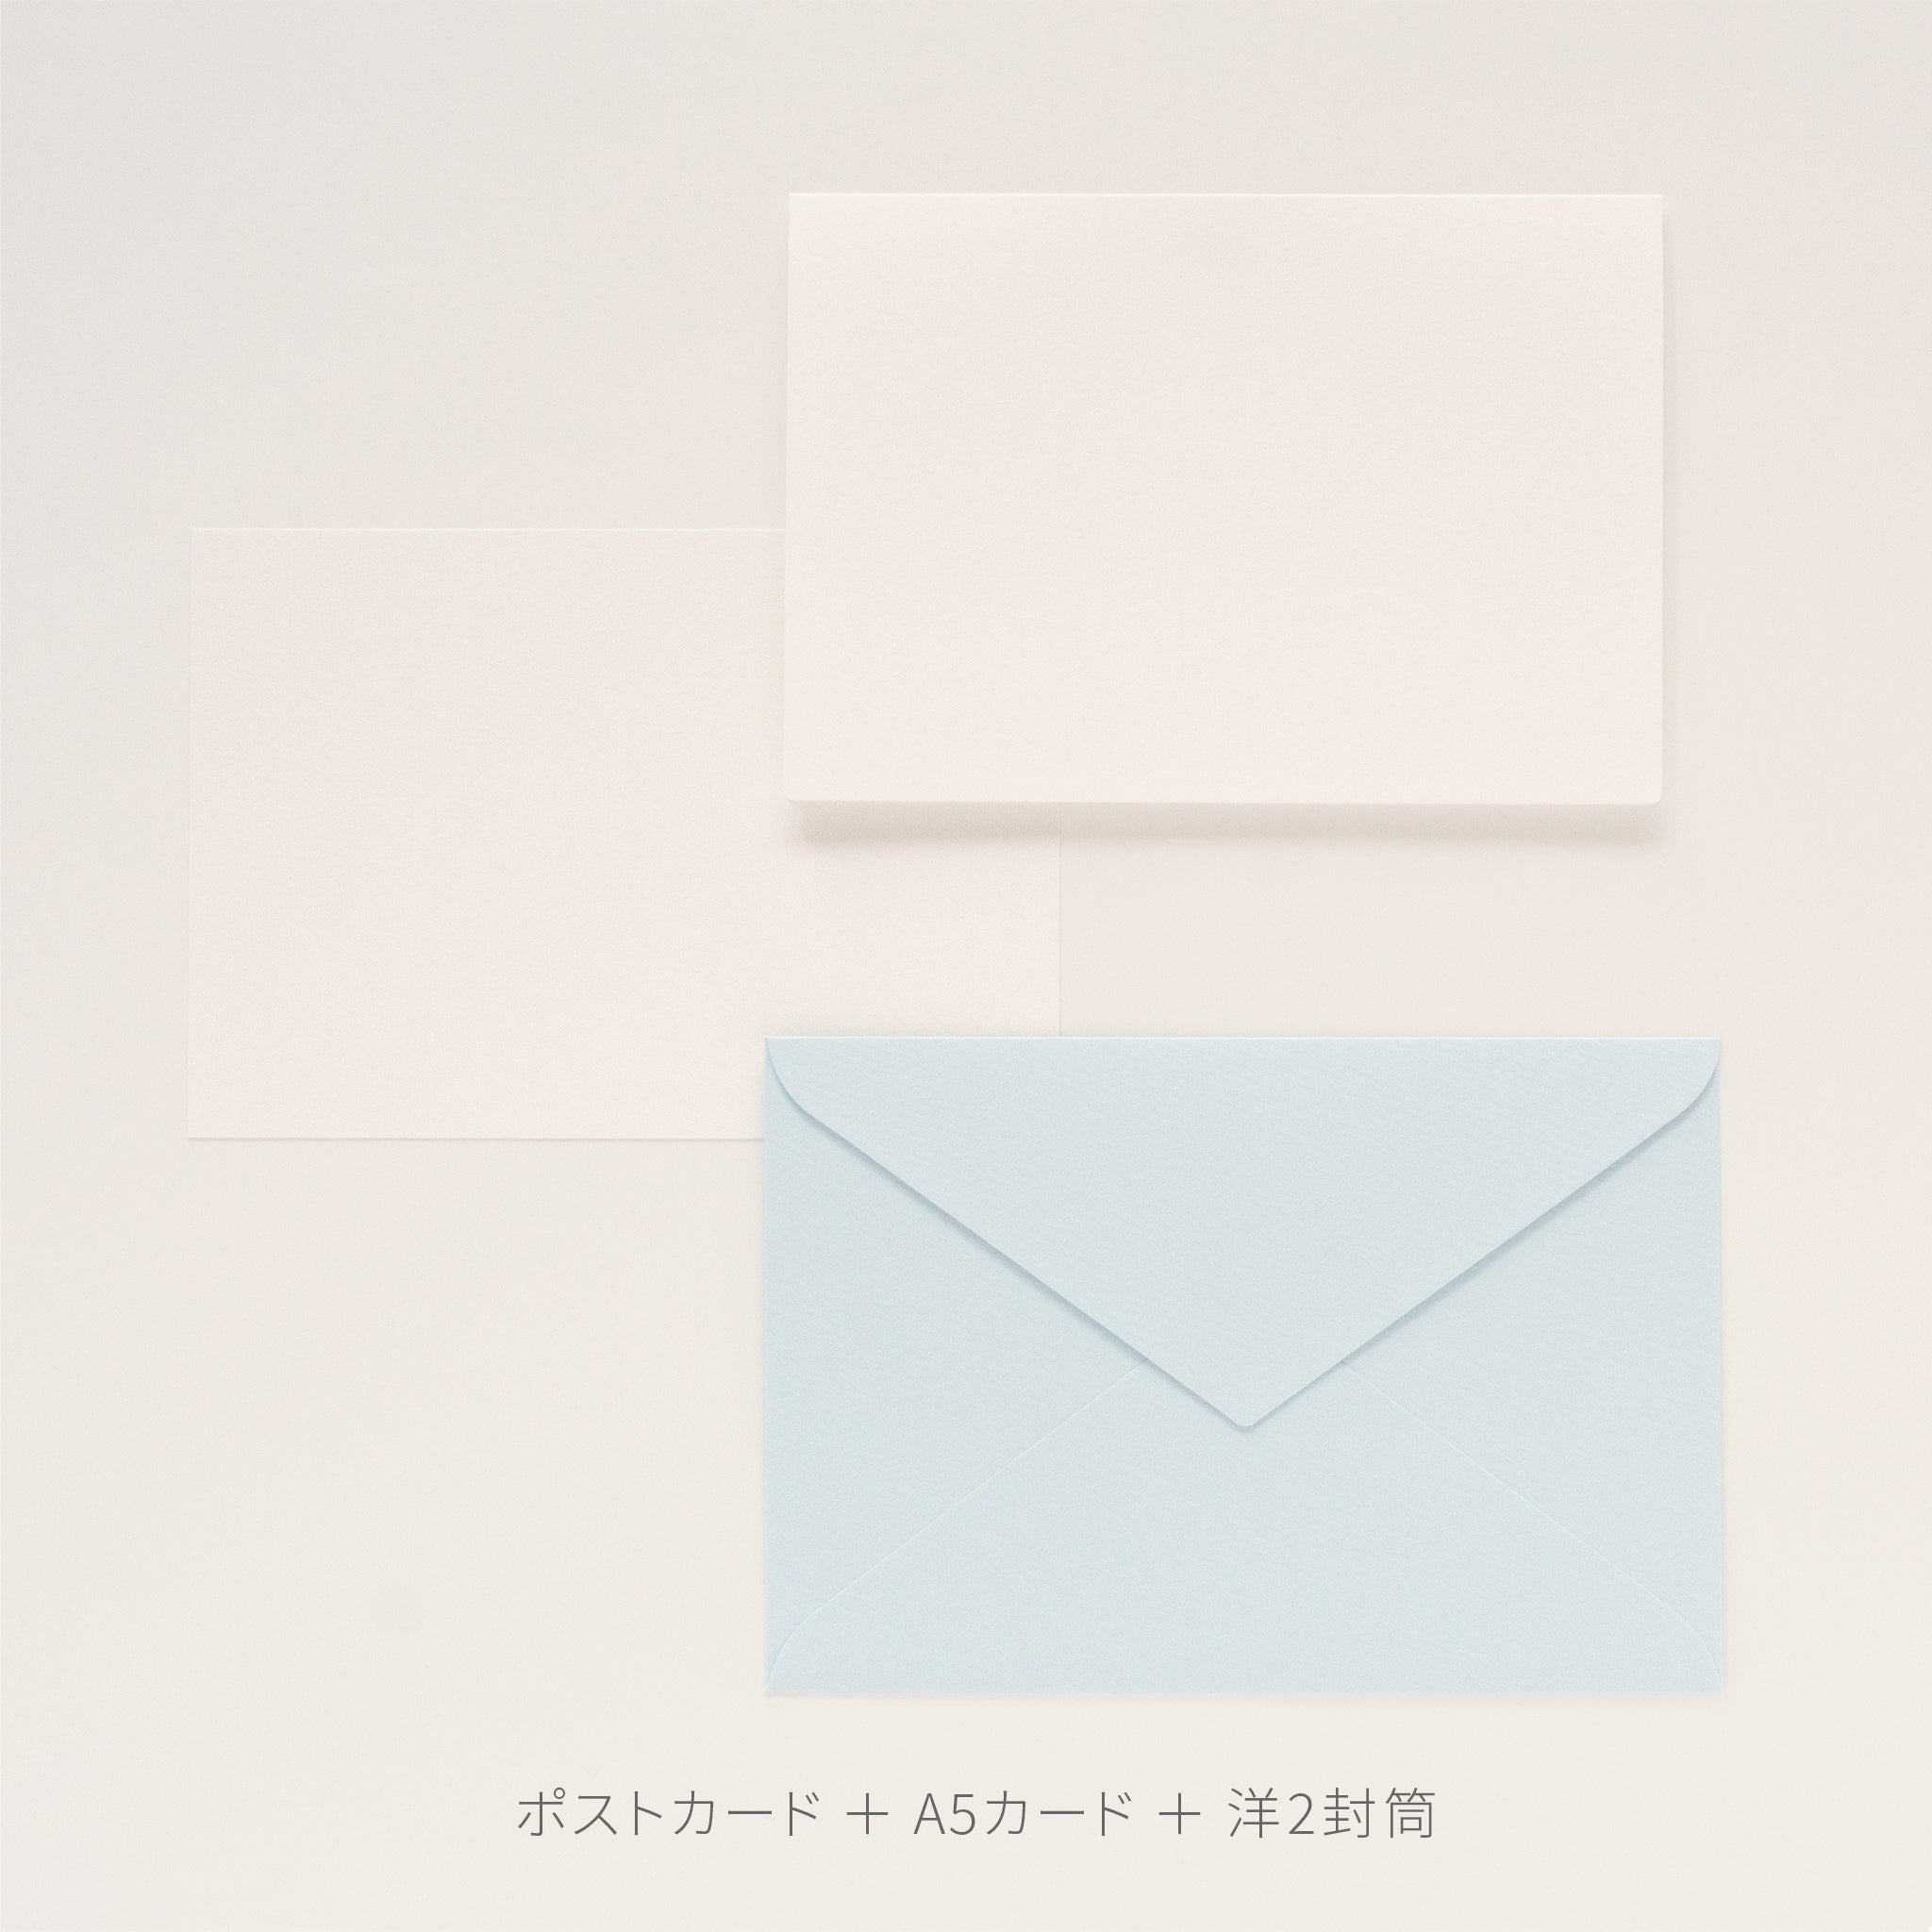 PAPER PALETTE 洋2封筒 ペルーラ スノーホワイト – products